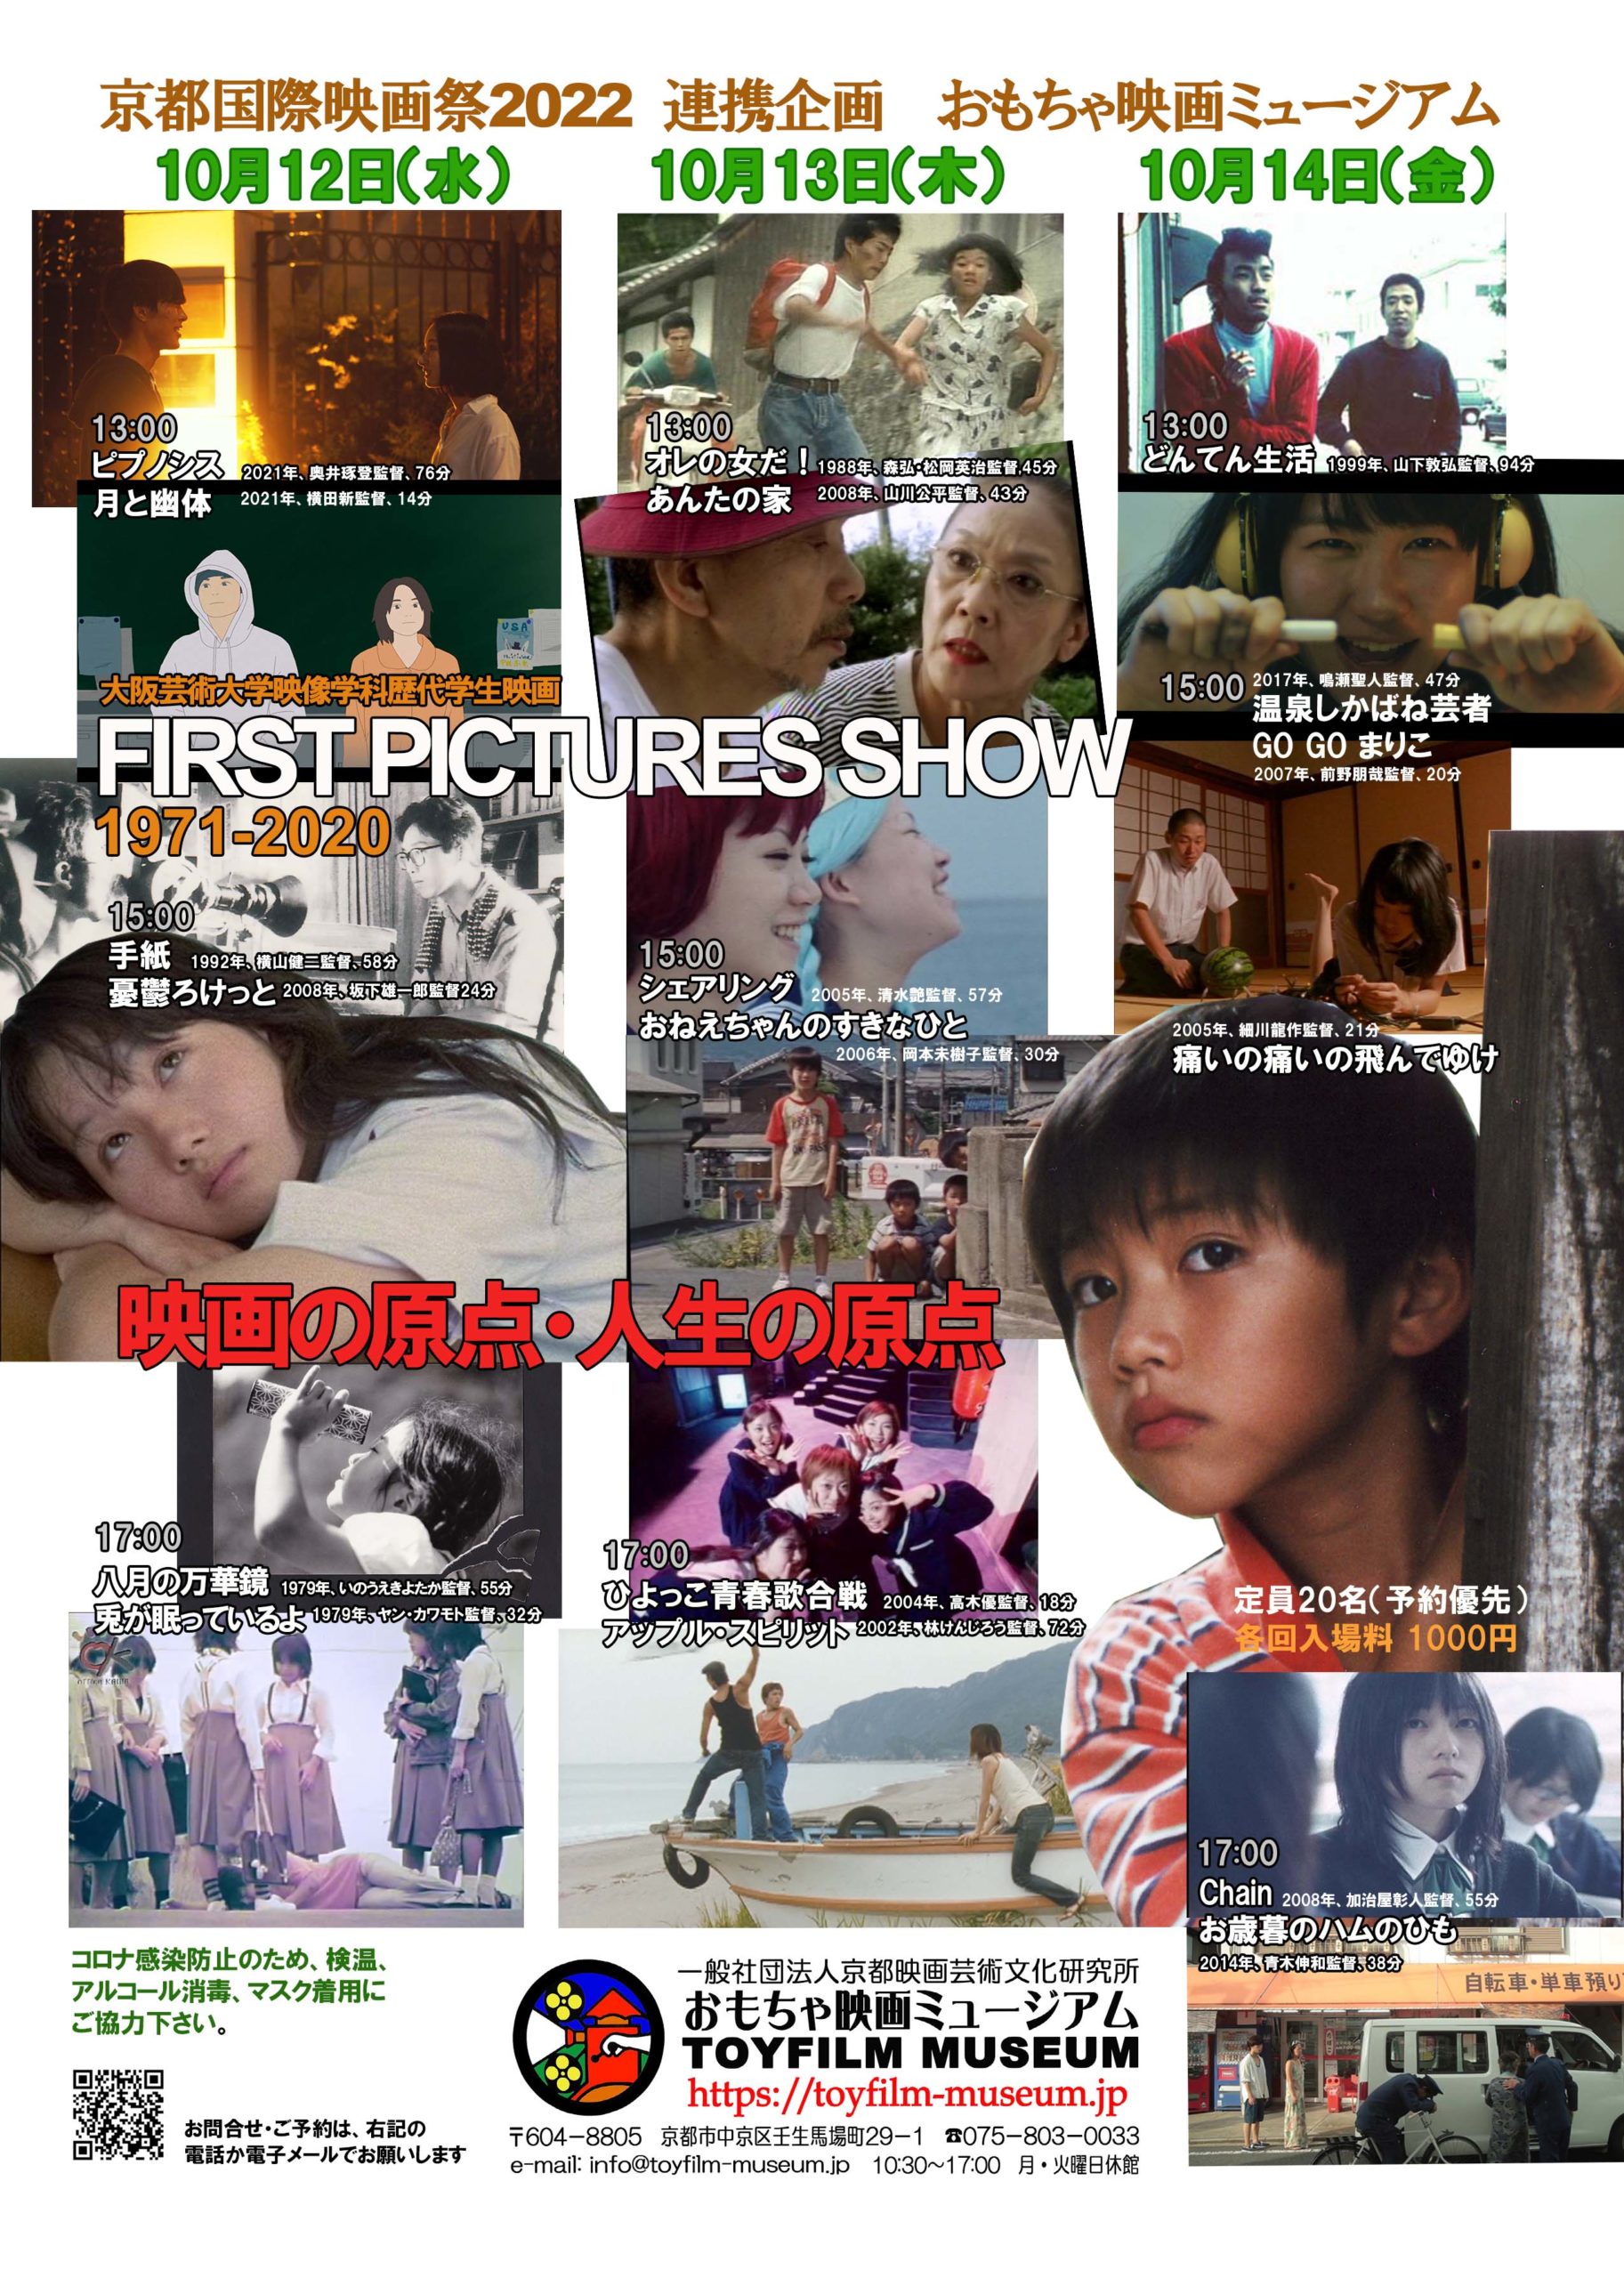 「大阪芸大映像学科歴代学生映画FIRST PICTURES SHOW1971-2020」に集まってくださった皆さん‼